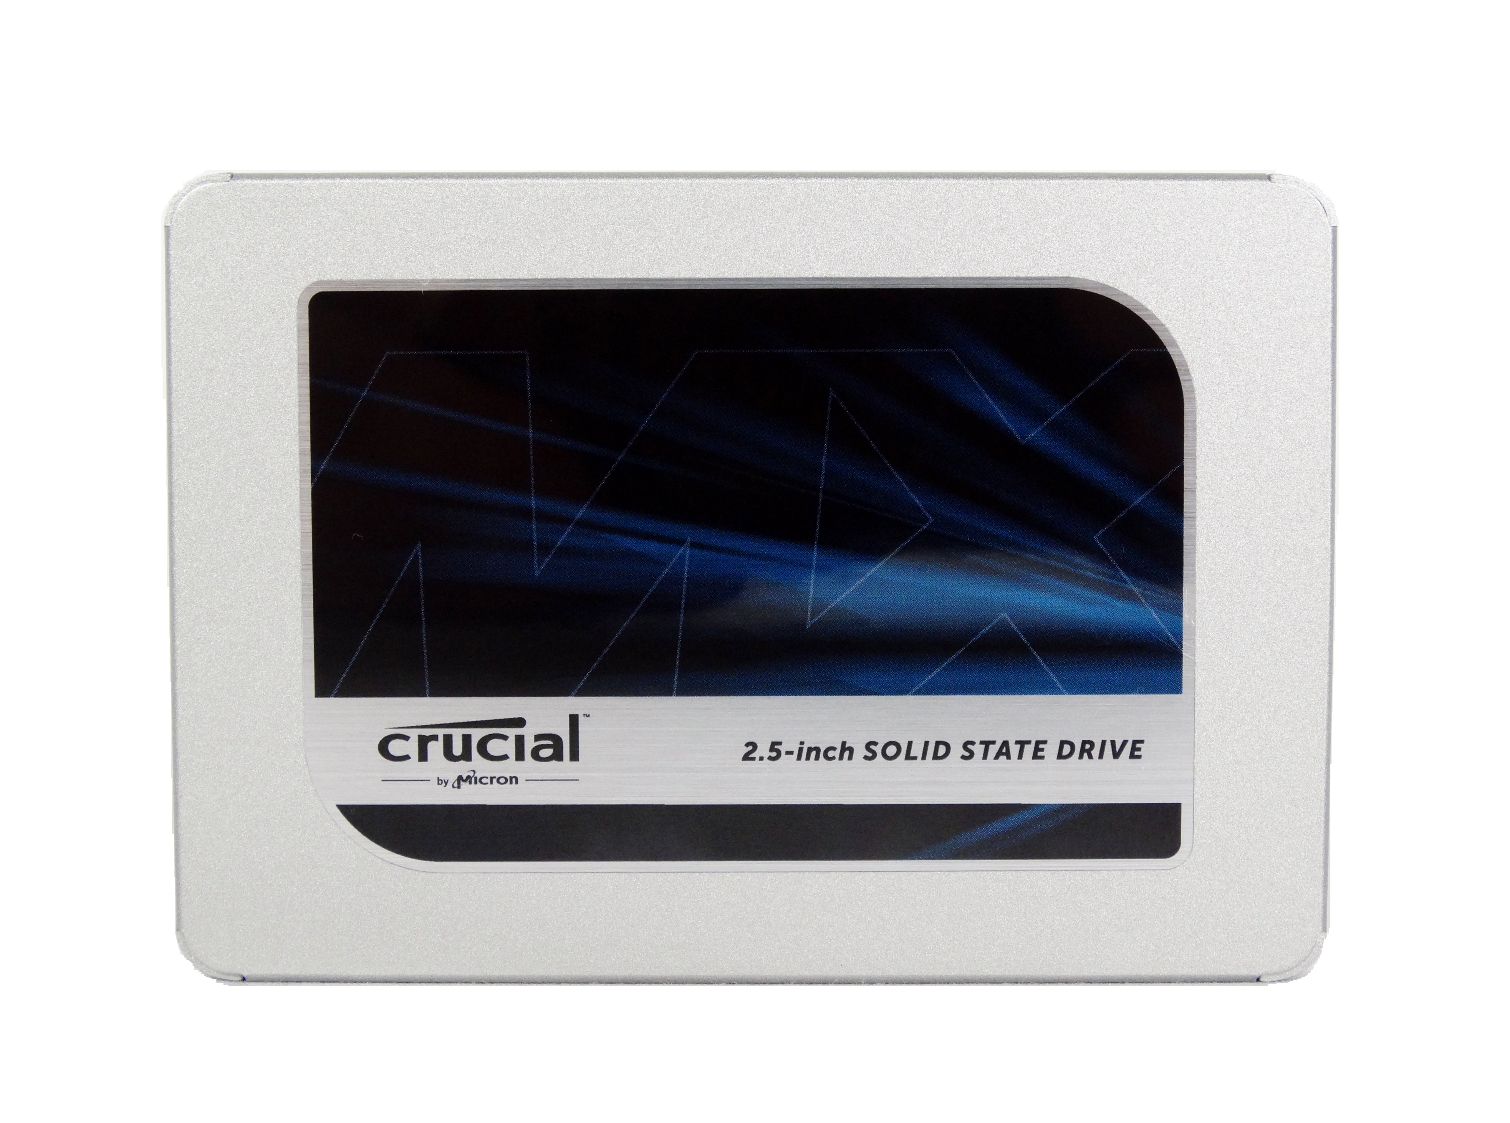 Awaken Vejfremstillingsproces svinge Crucial MX500 SSD Review - Tom's Hardware | Tom's Hardware